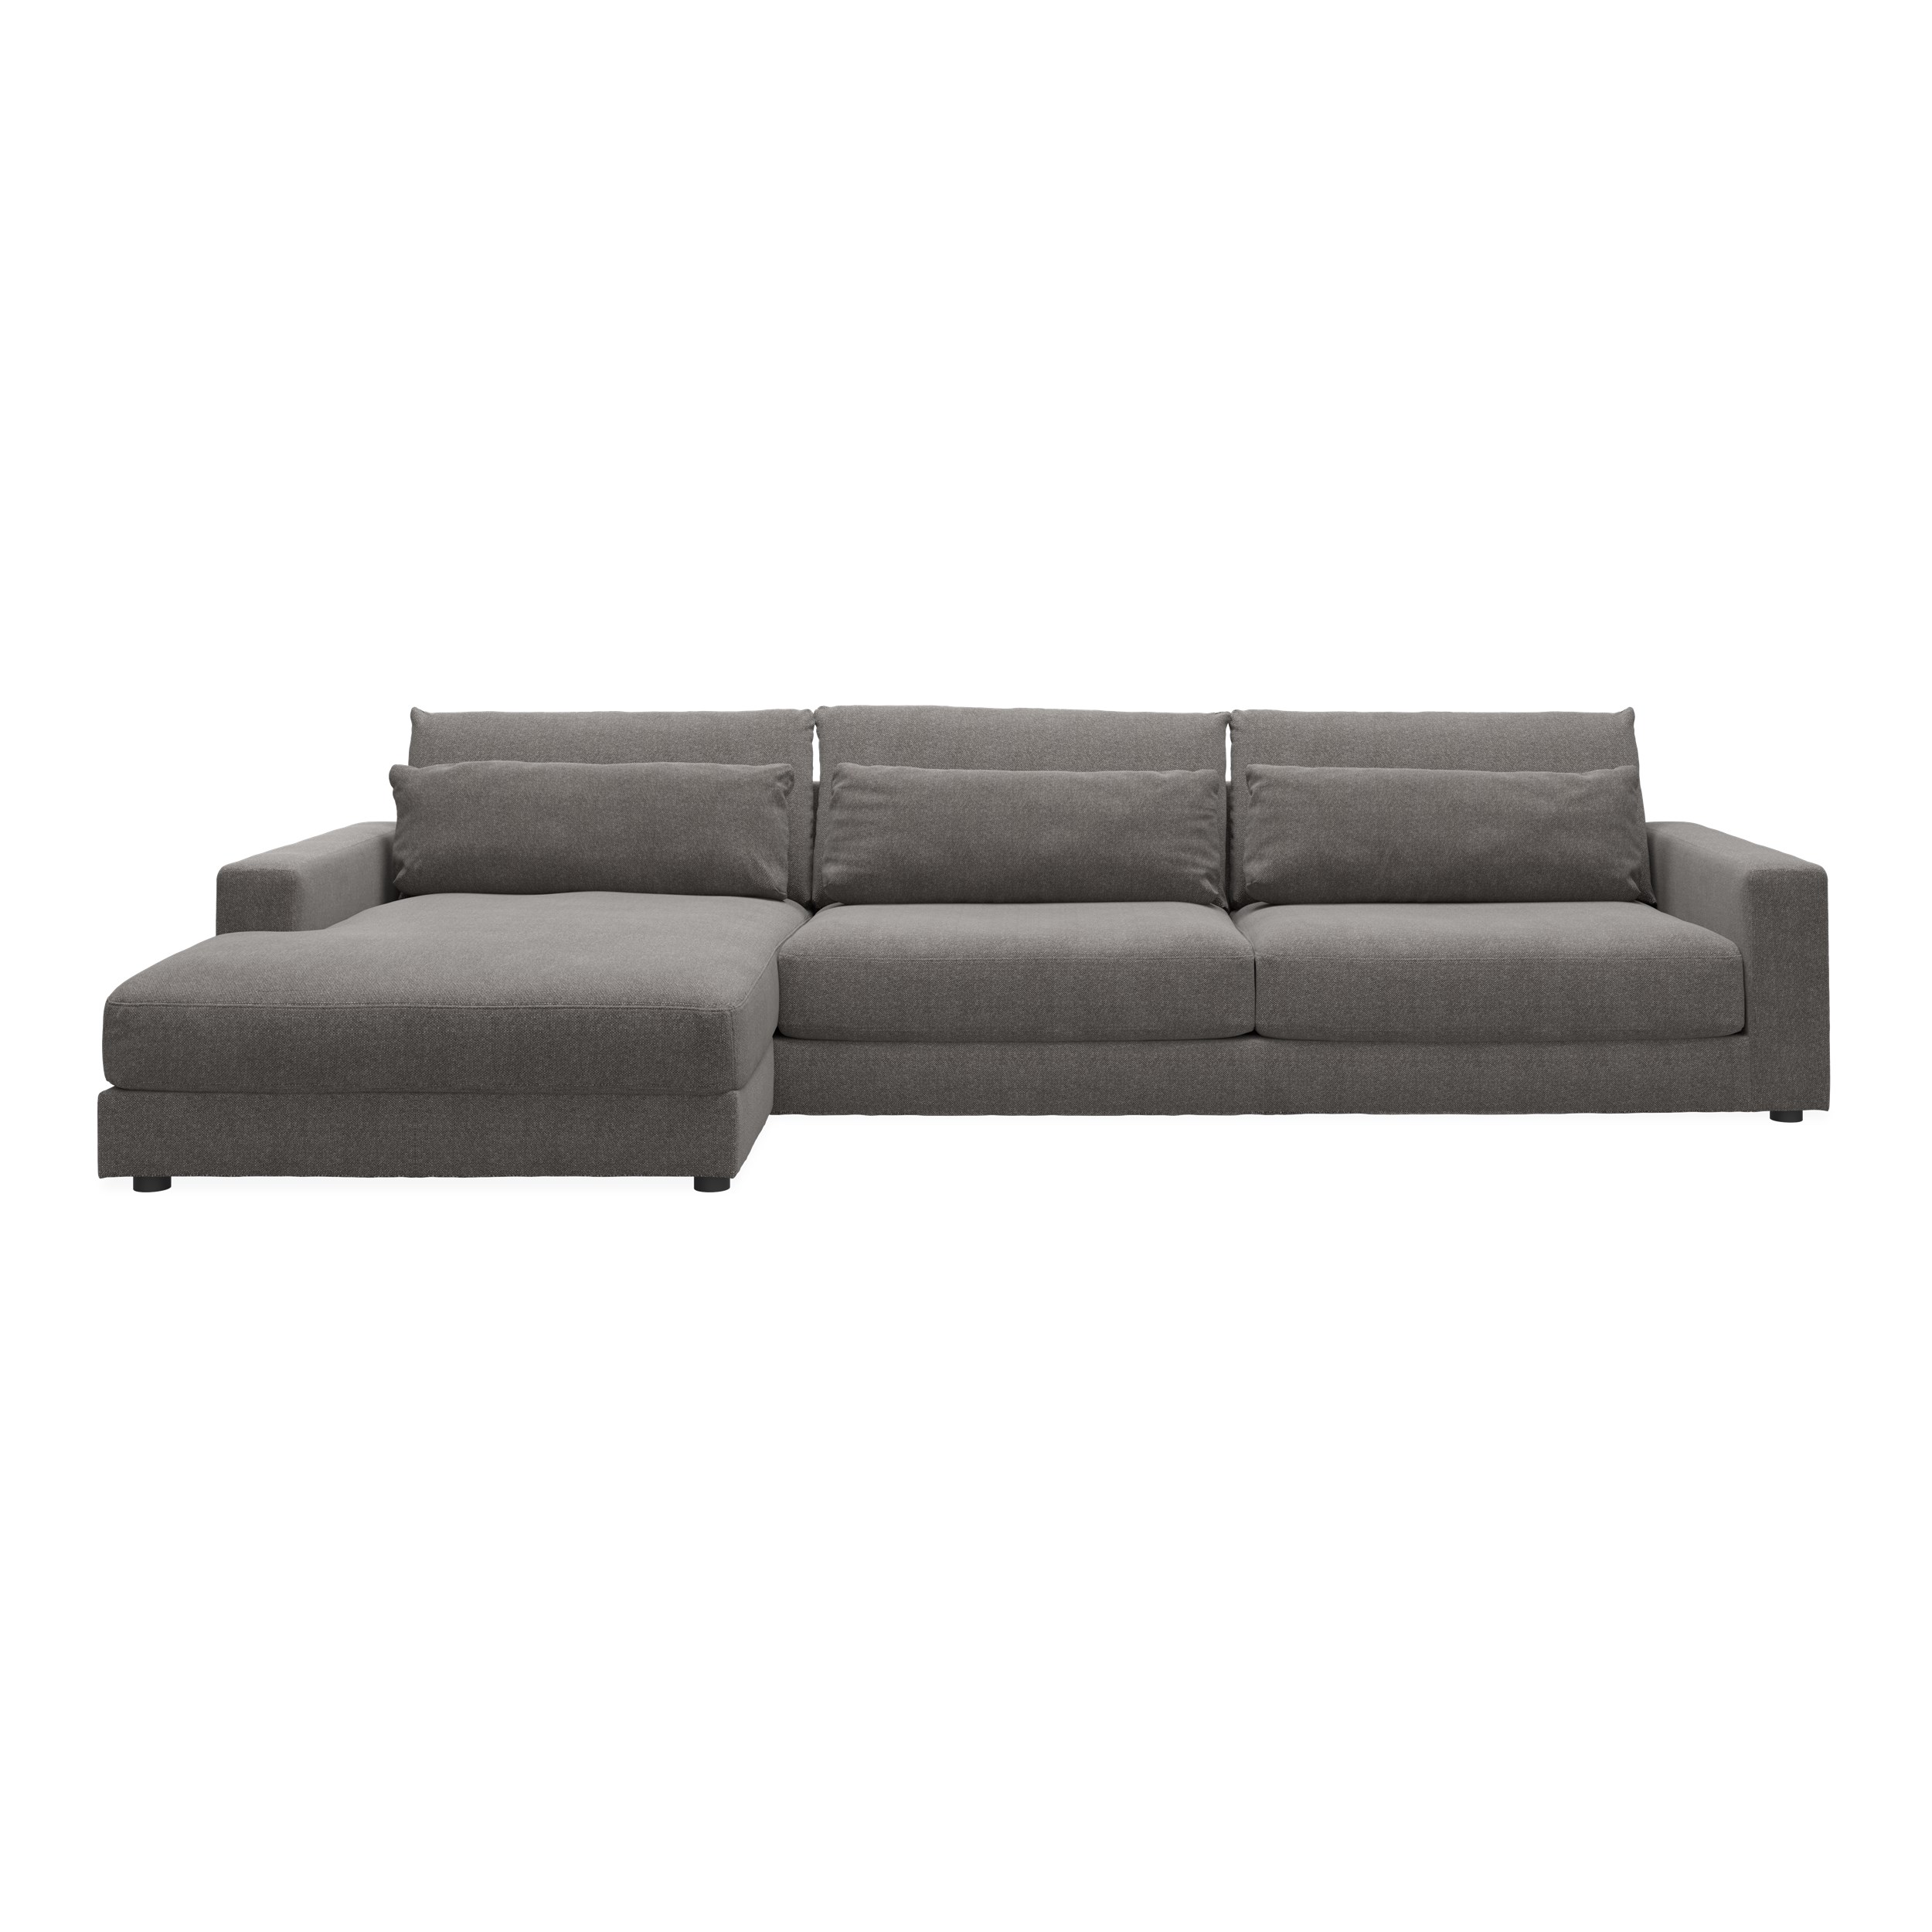 Halmstad vänstervänd soffa med schäslong - Rate 108 Wood textil och ben i svart plast